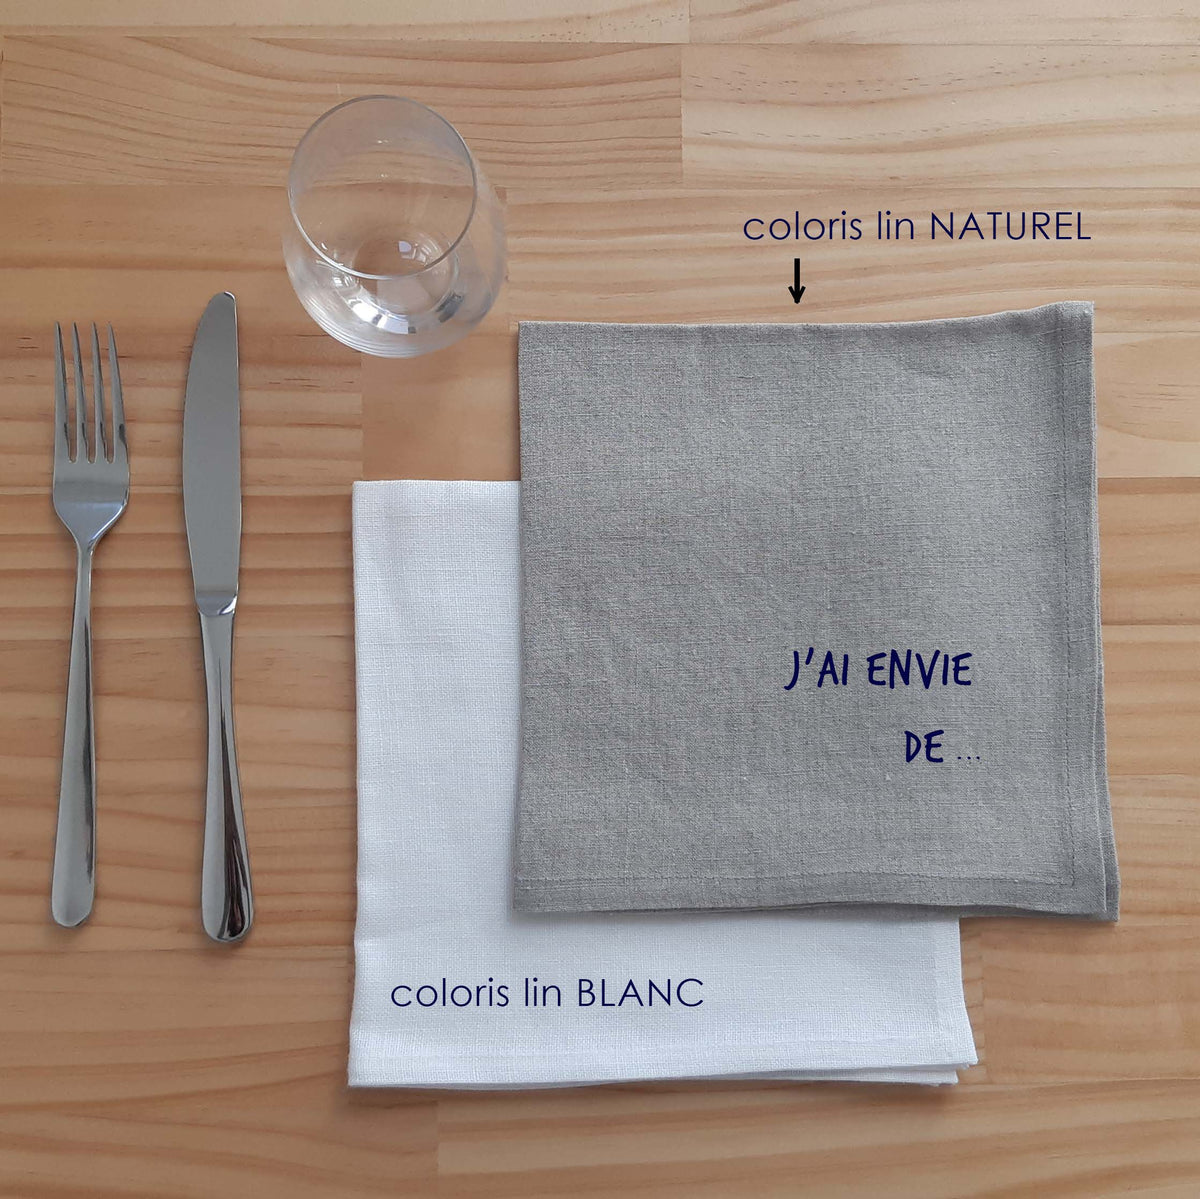 serviette "j'ai envie de" table lin decoration éthique made in France sérigraphie j'ai envie environnement renaissance creation